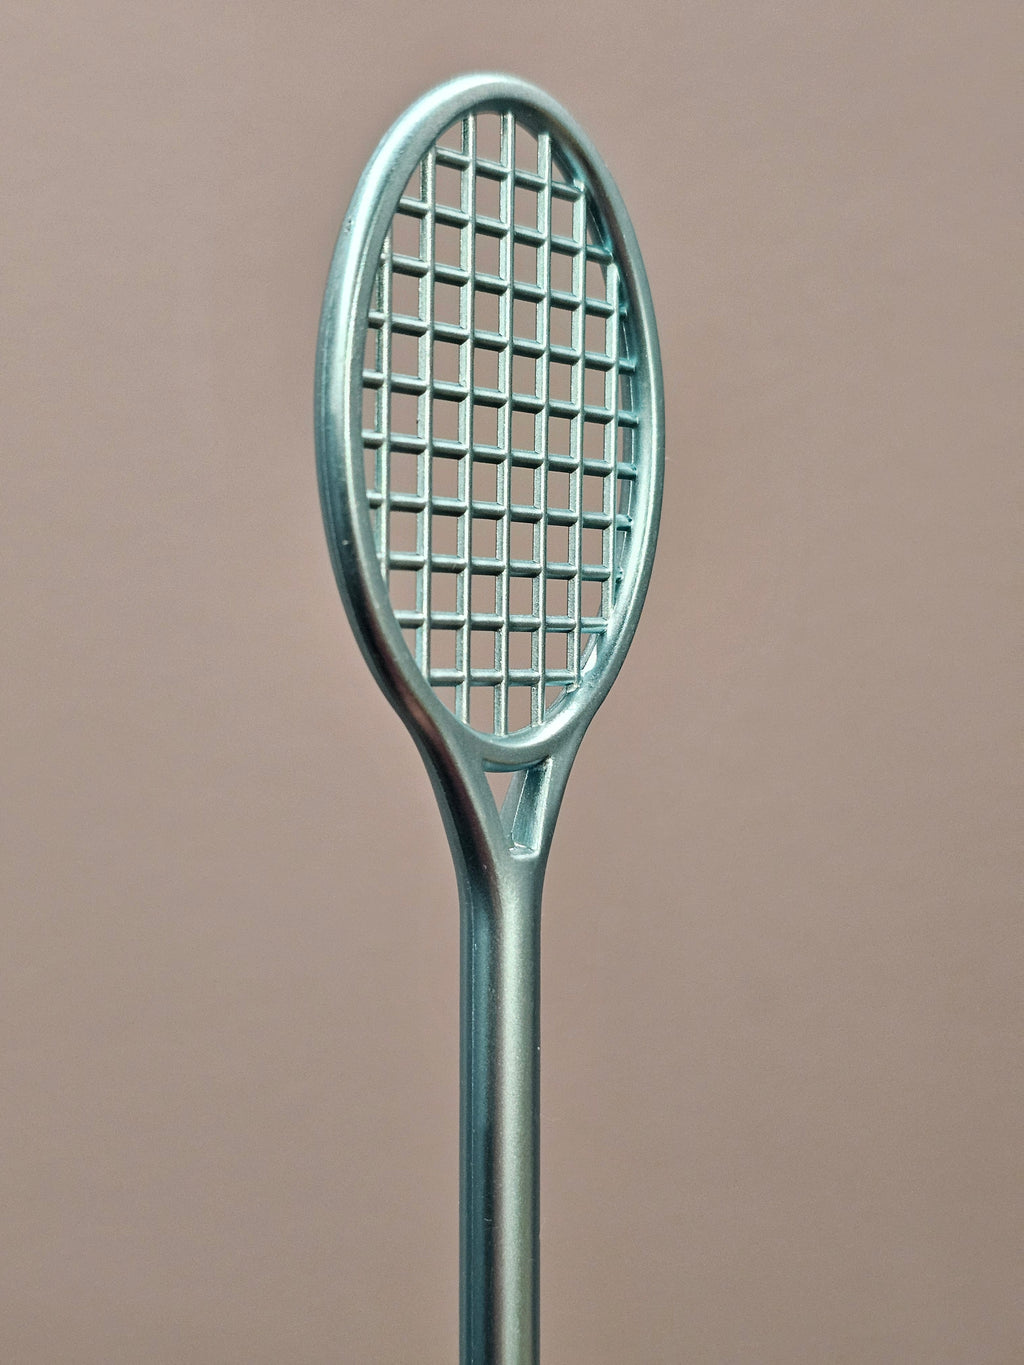 Badminton Racket Pen - badminton racket review